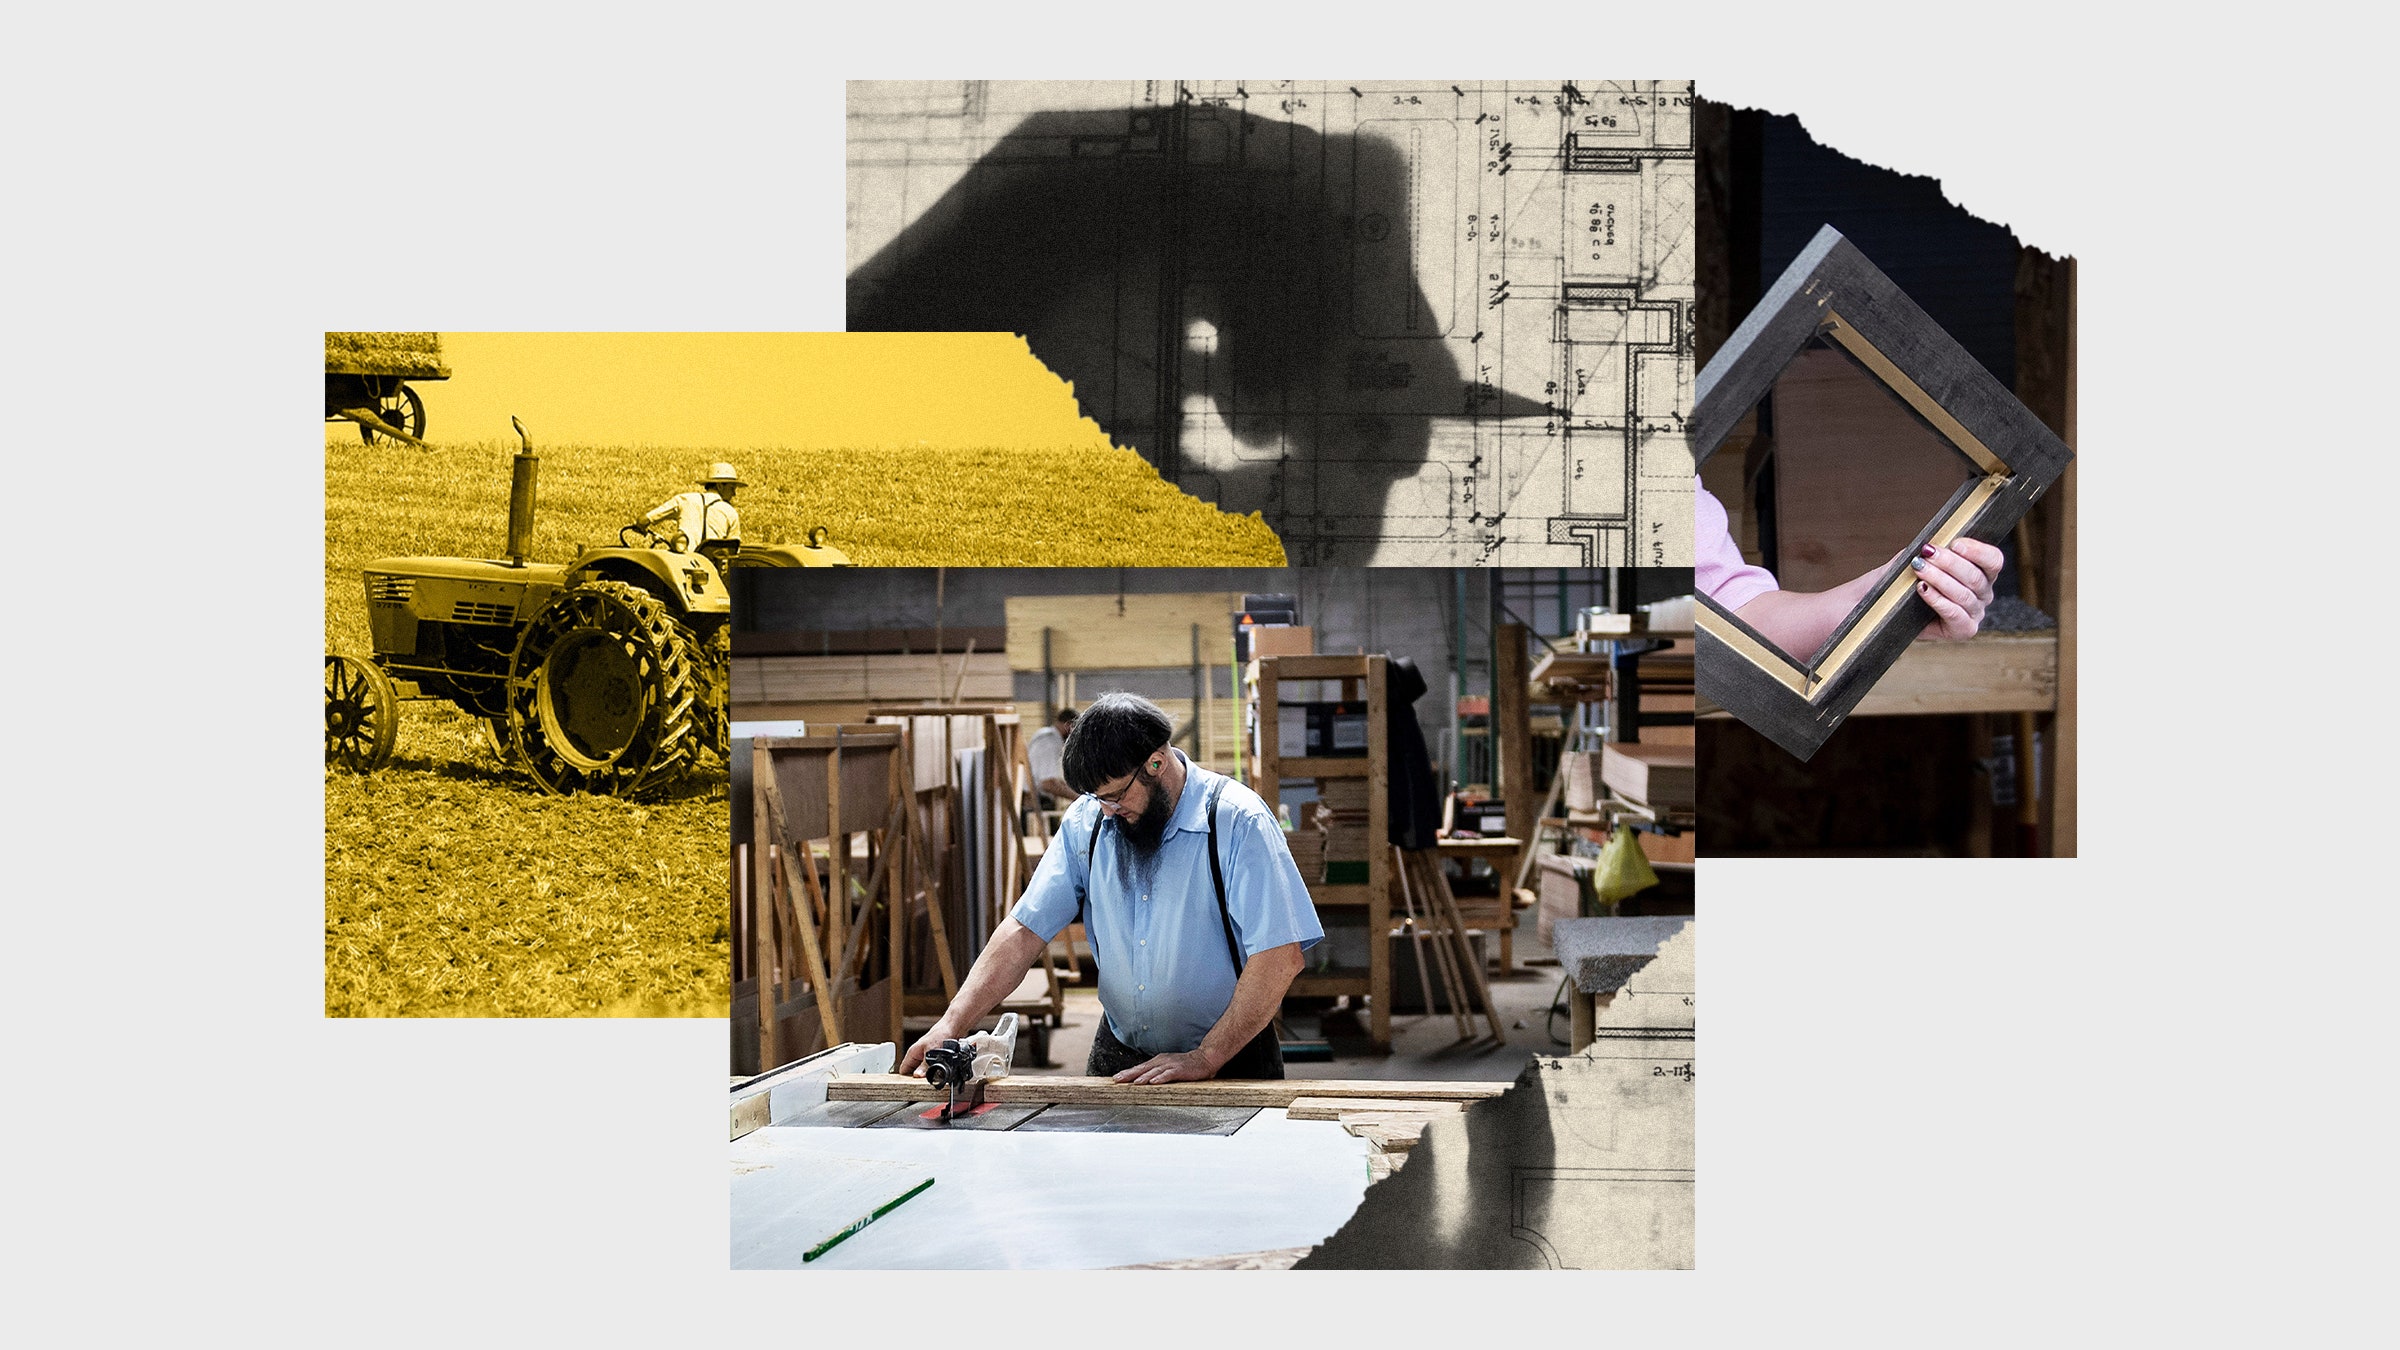 Colagem de fotos com um marceneiro Amish, um homem dirigindo um trator e um desenho